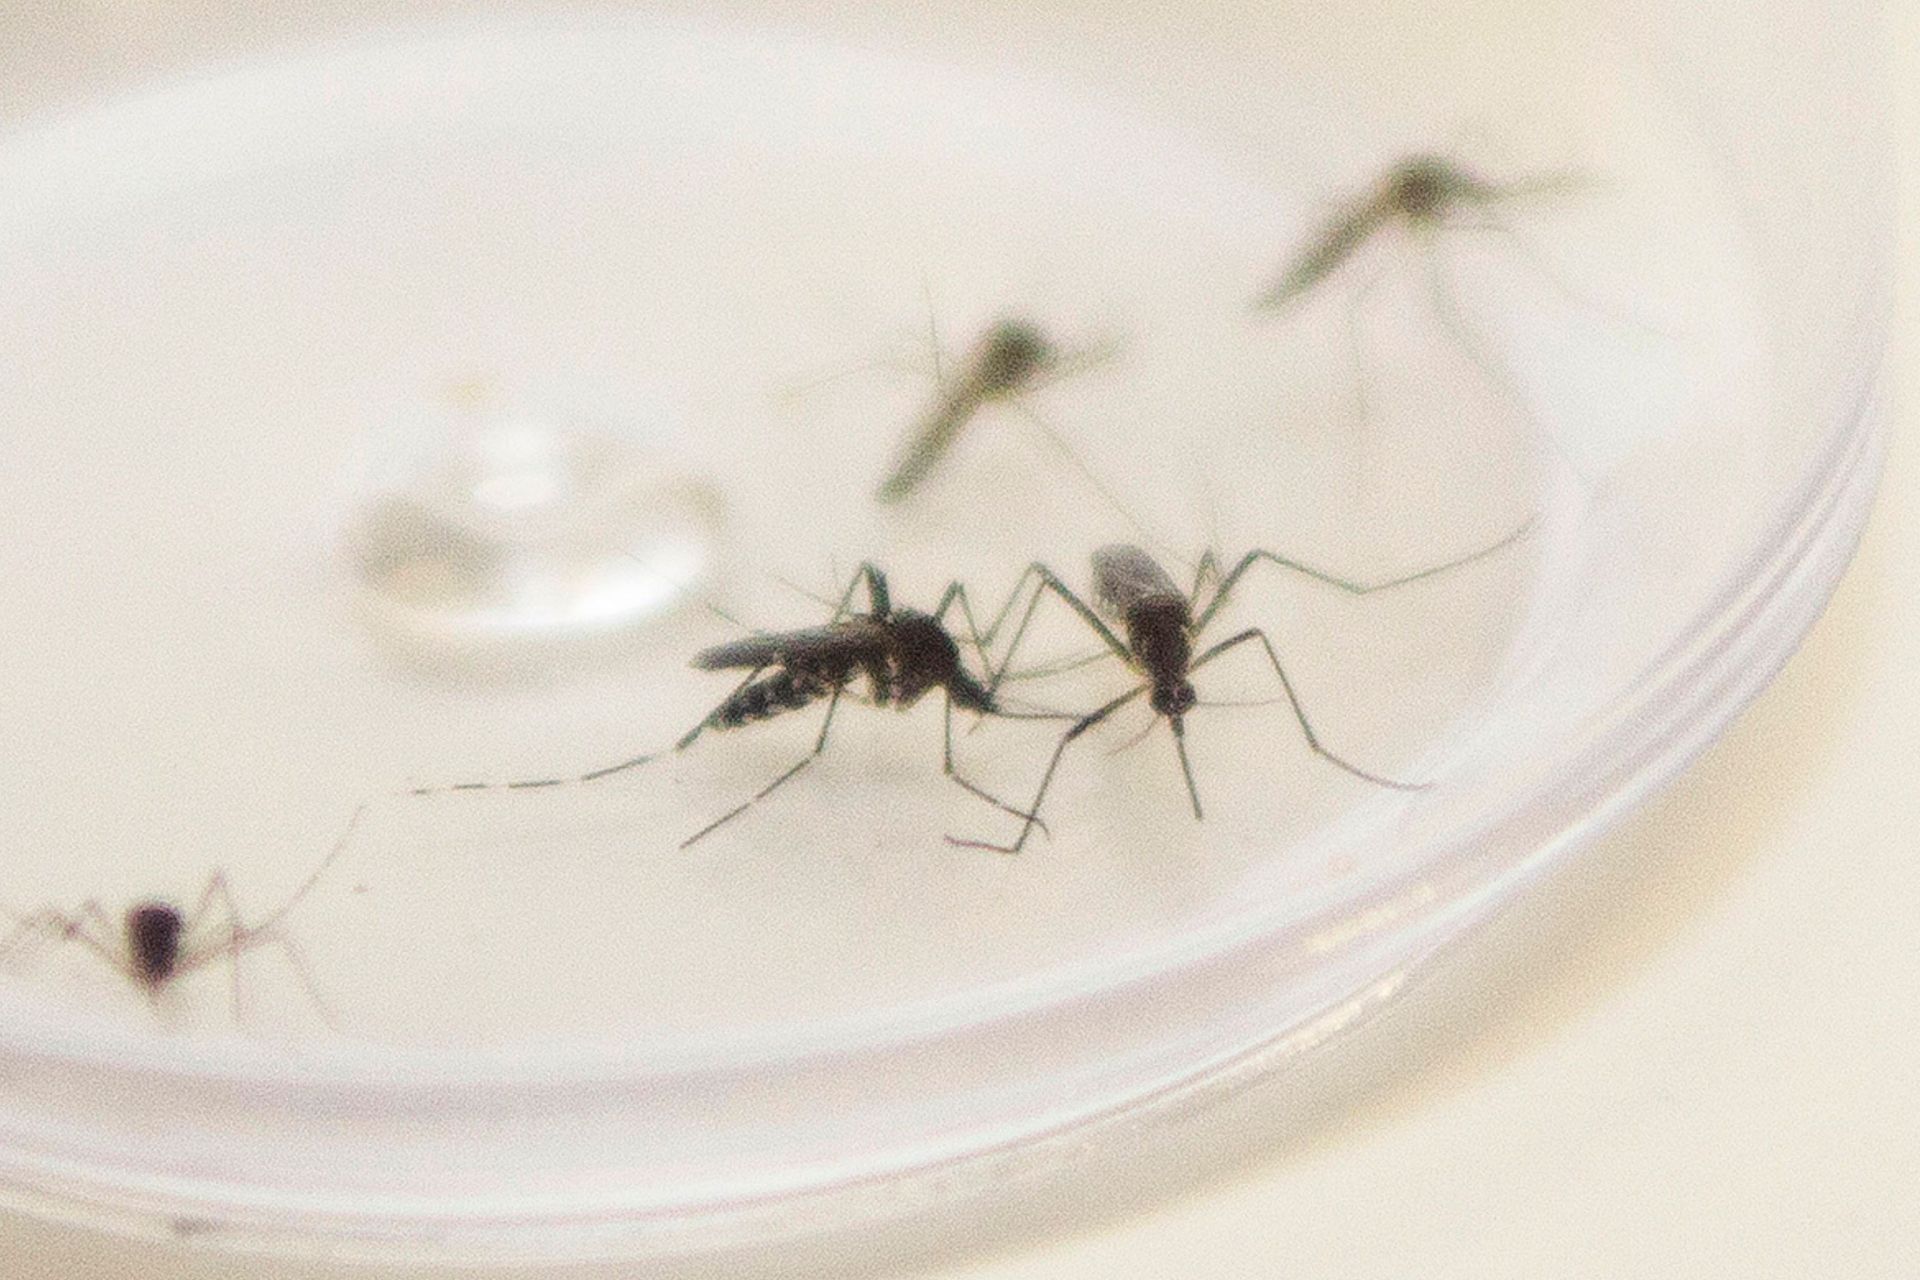 Bestätigte Dengue-Fälle nehmen in Paraná innerhalb eines Jahres um 424 % zu – CBN Curitiba – A Rádio Que Toca Notícia